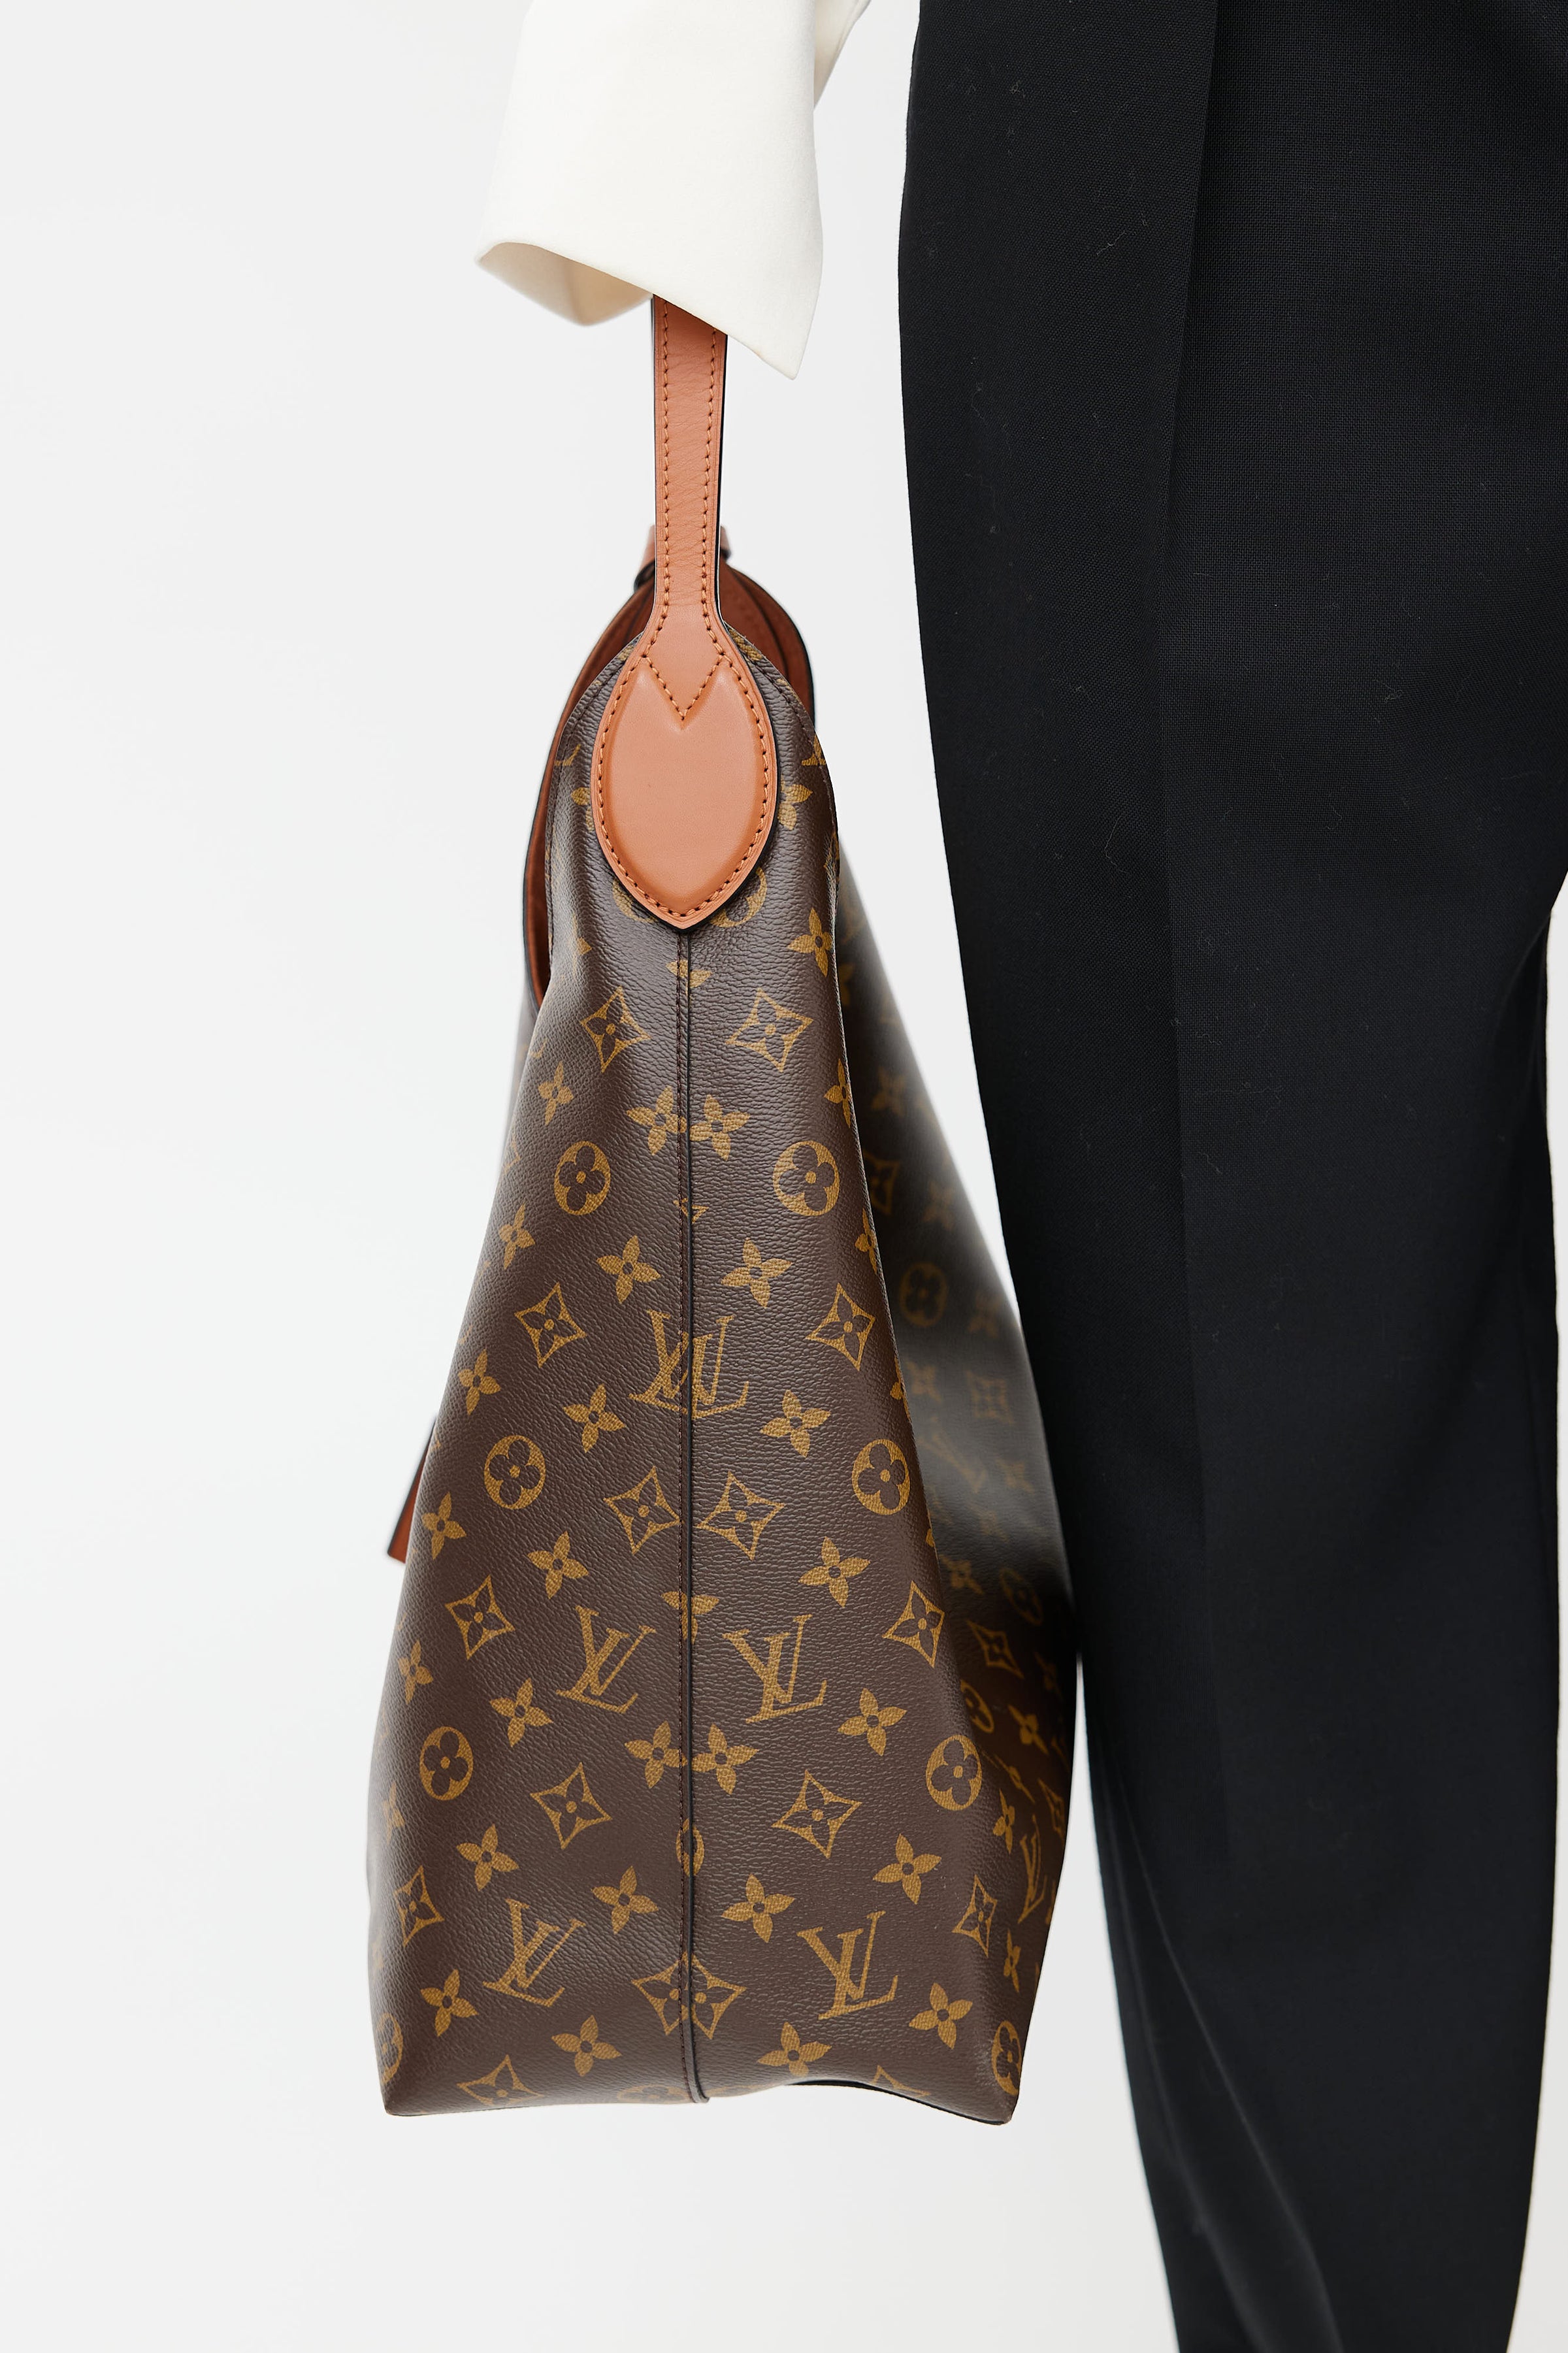 Pre-Owned LOUIS VUITTON Louis Vuitton Flower Hobo Shoulder Bag